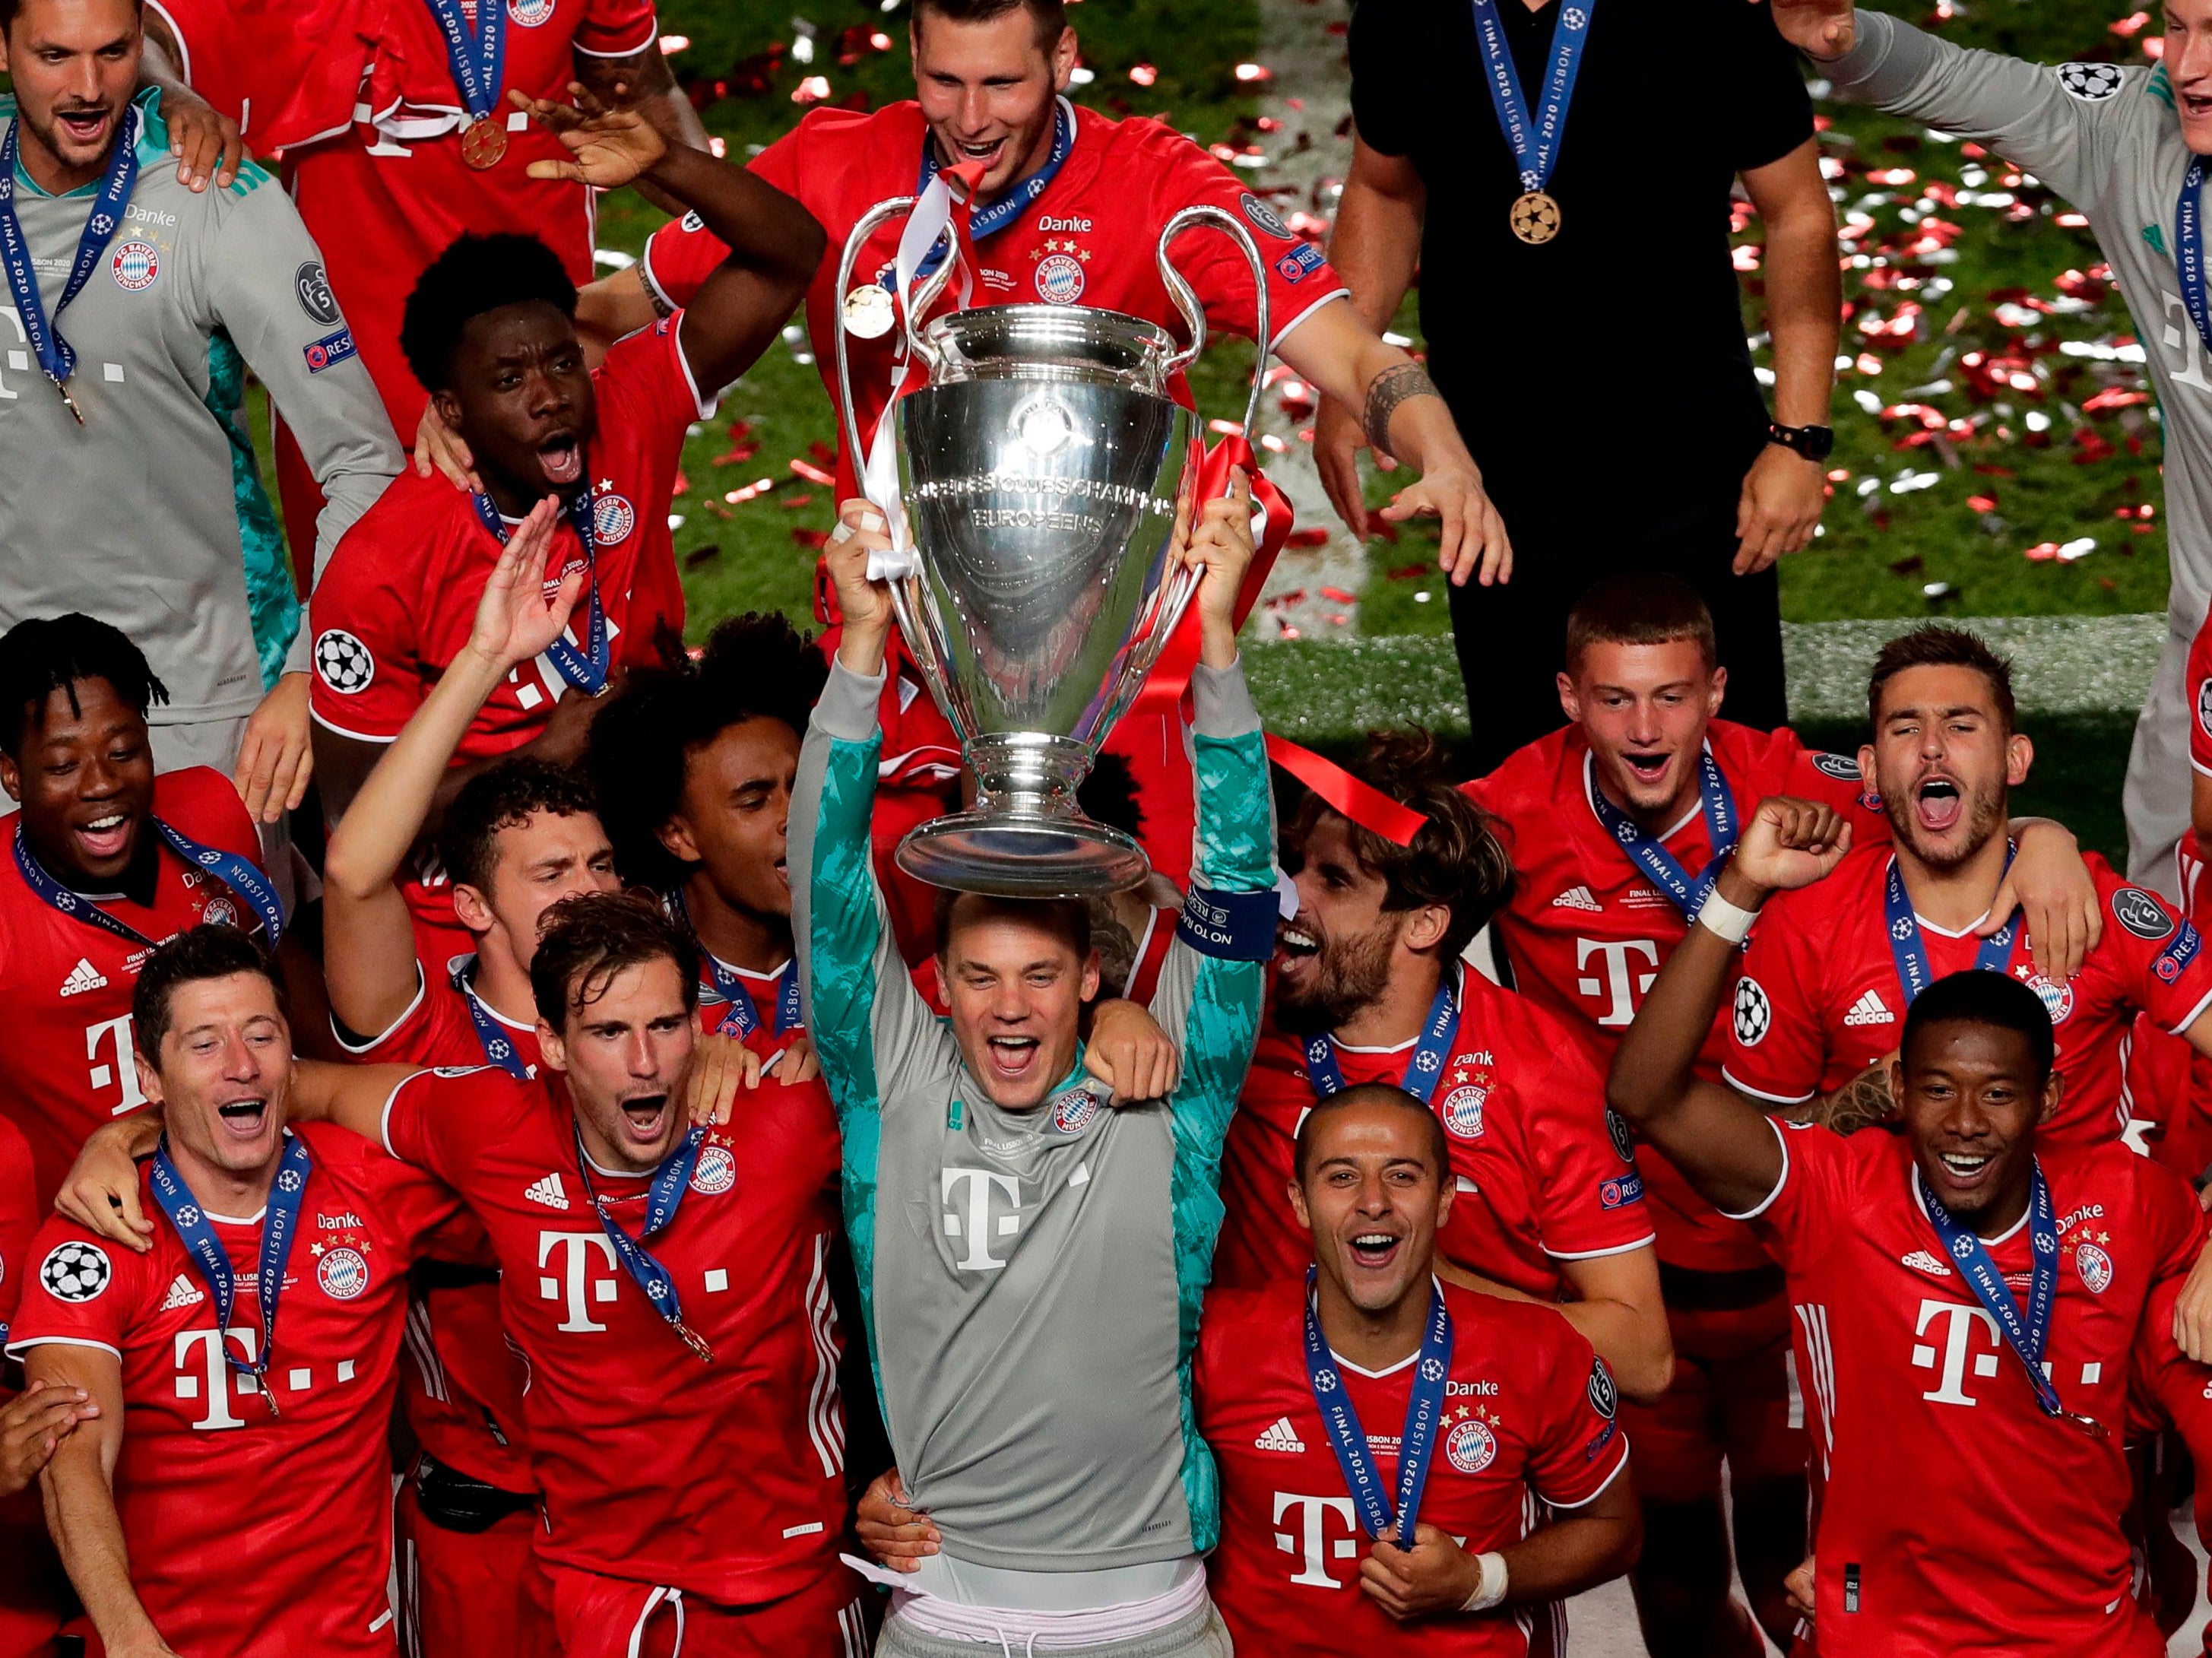 Bayern Munich celebrate winning the Champions League